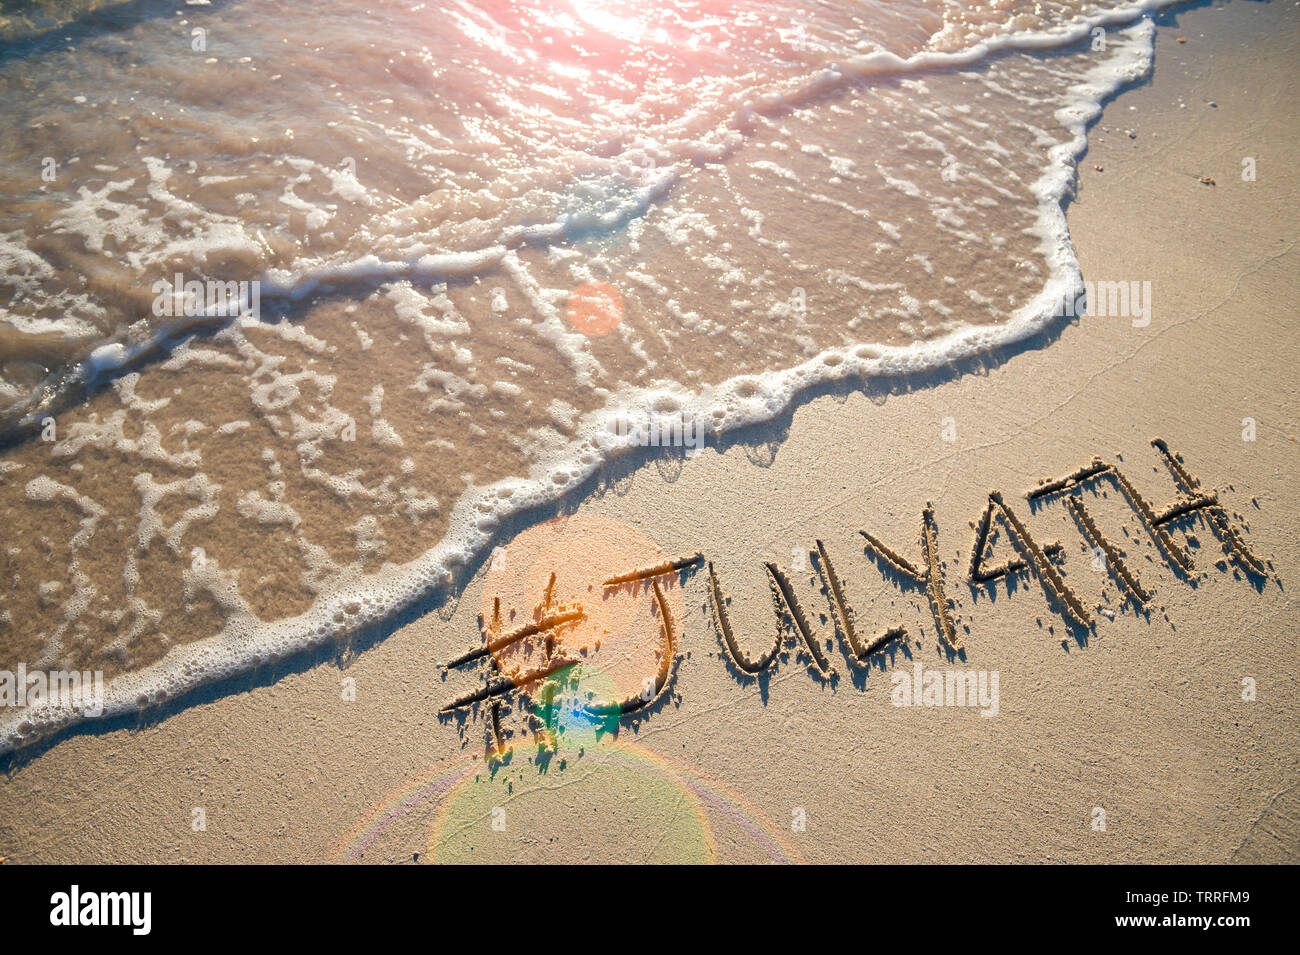 Moderne Nachricht für den 4. Juli amerikanischen Feiertag mit einem Social Media - freundliche hashtag in glatten Sand geschrieben mit ankommenden Welle auf den Strand Stockfoto